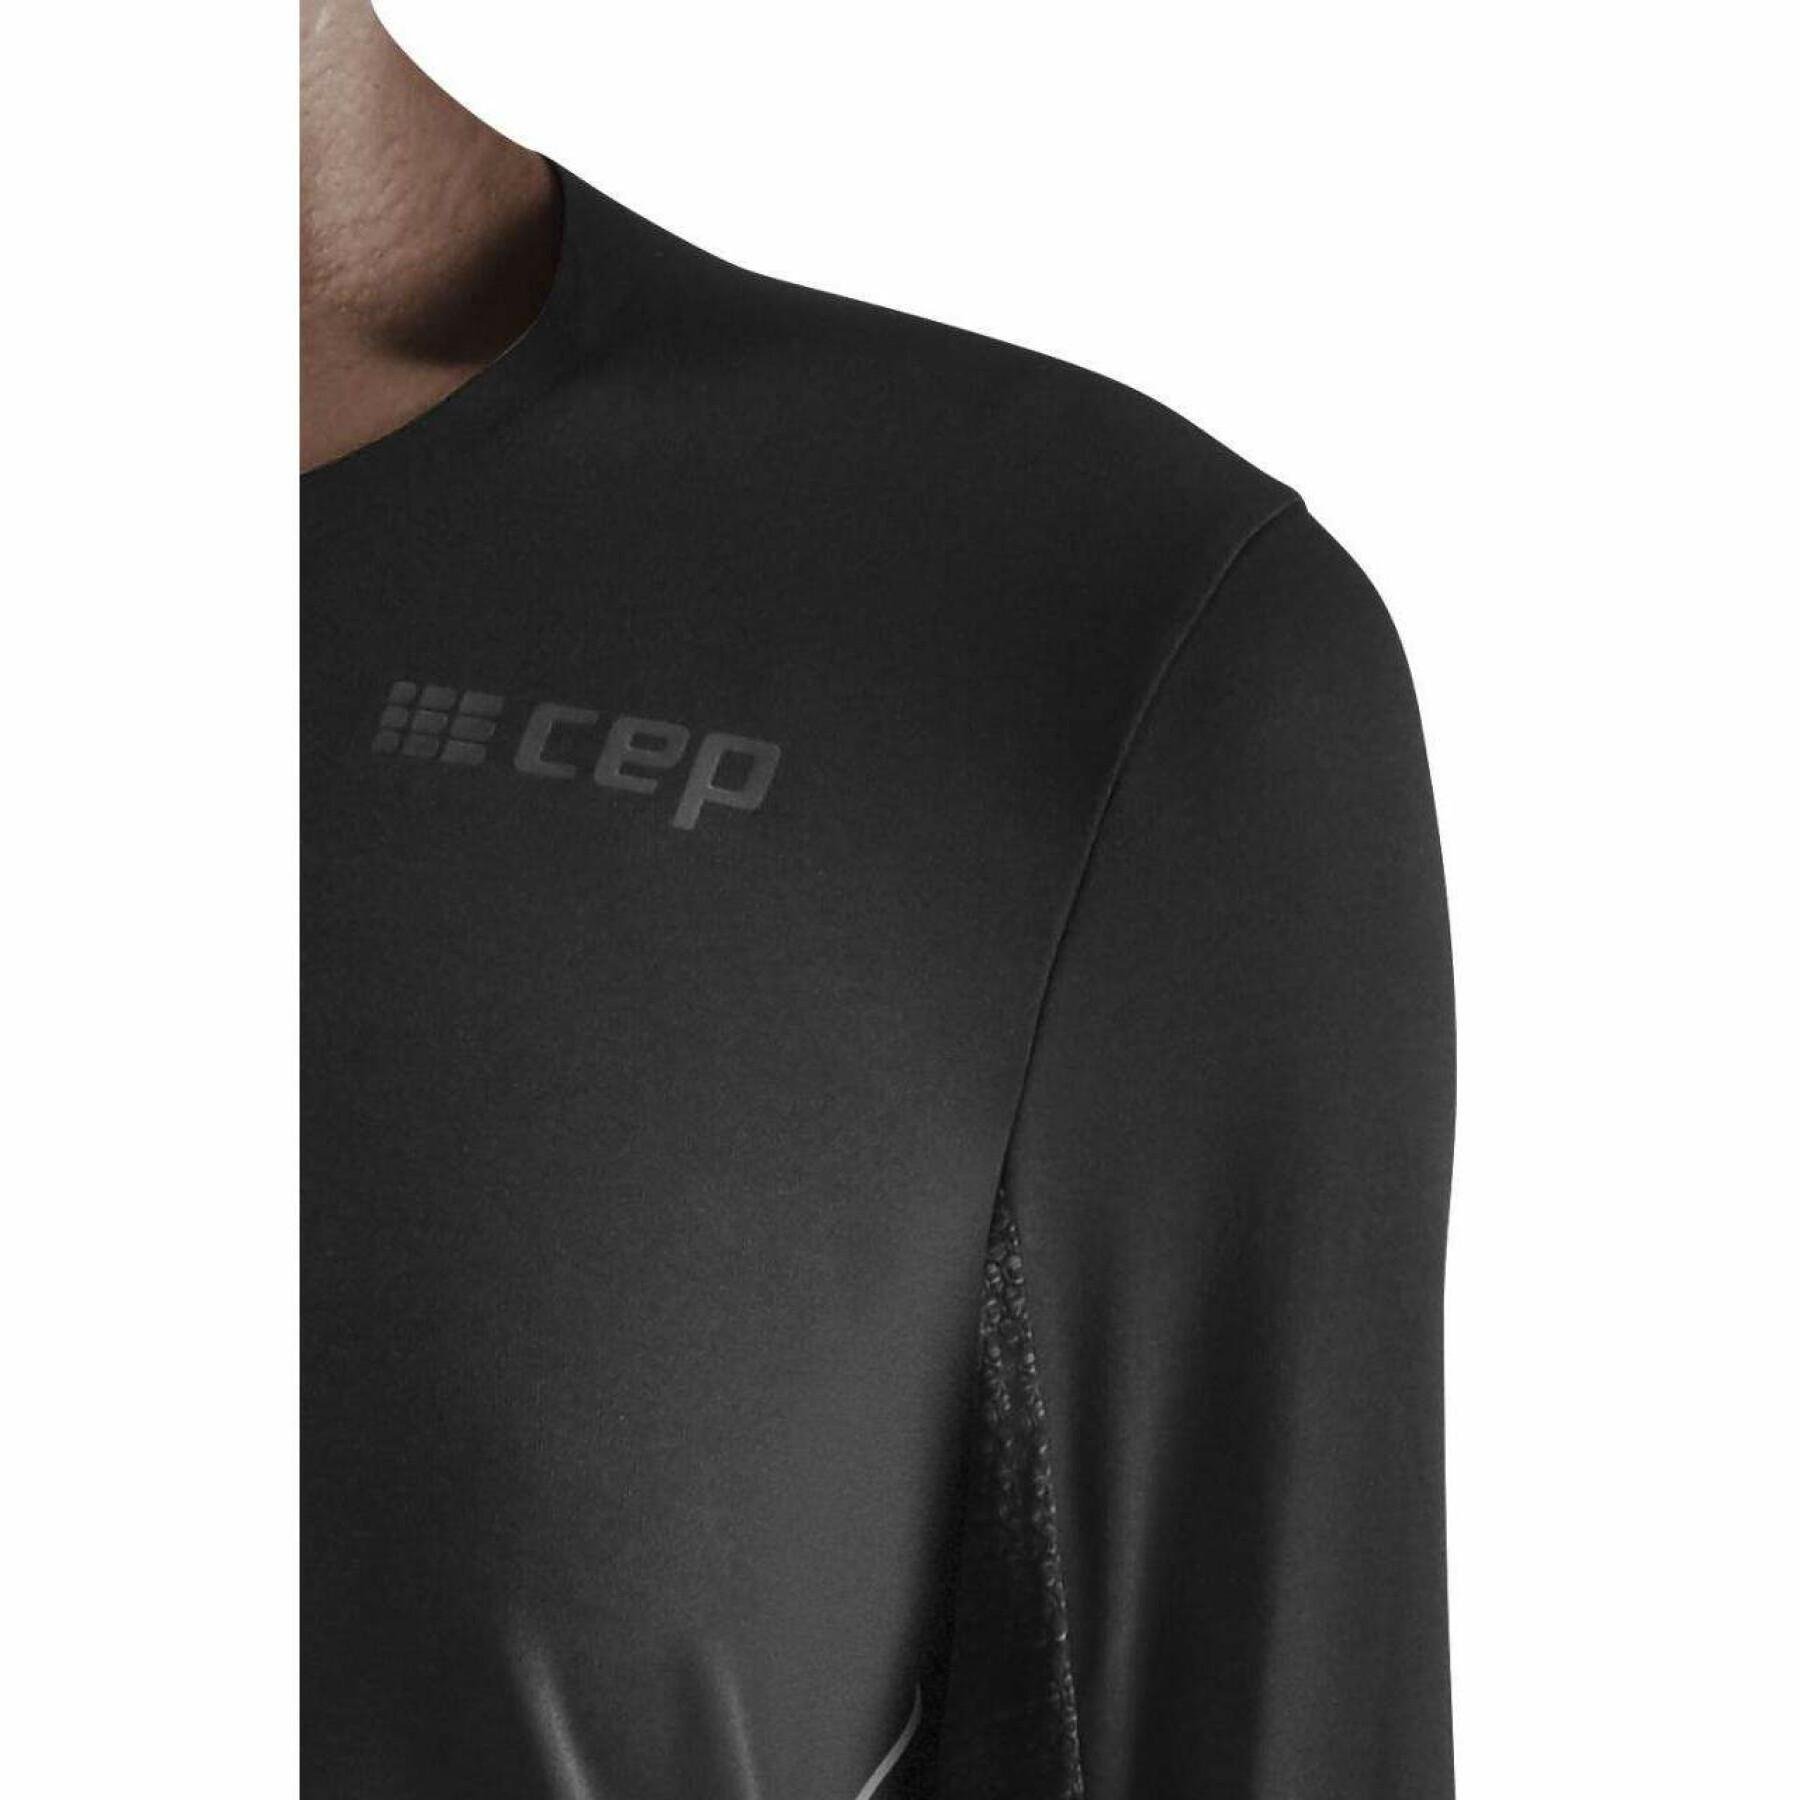 Långärmad tröja för kvinnor CEP Compression